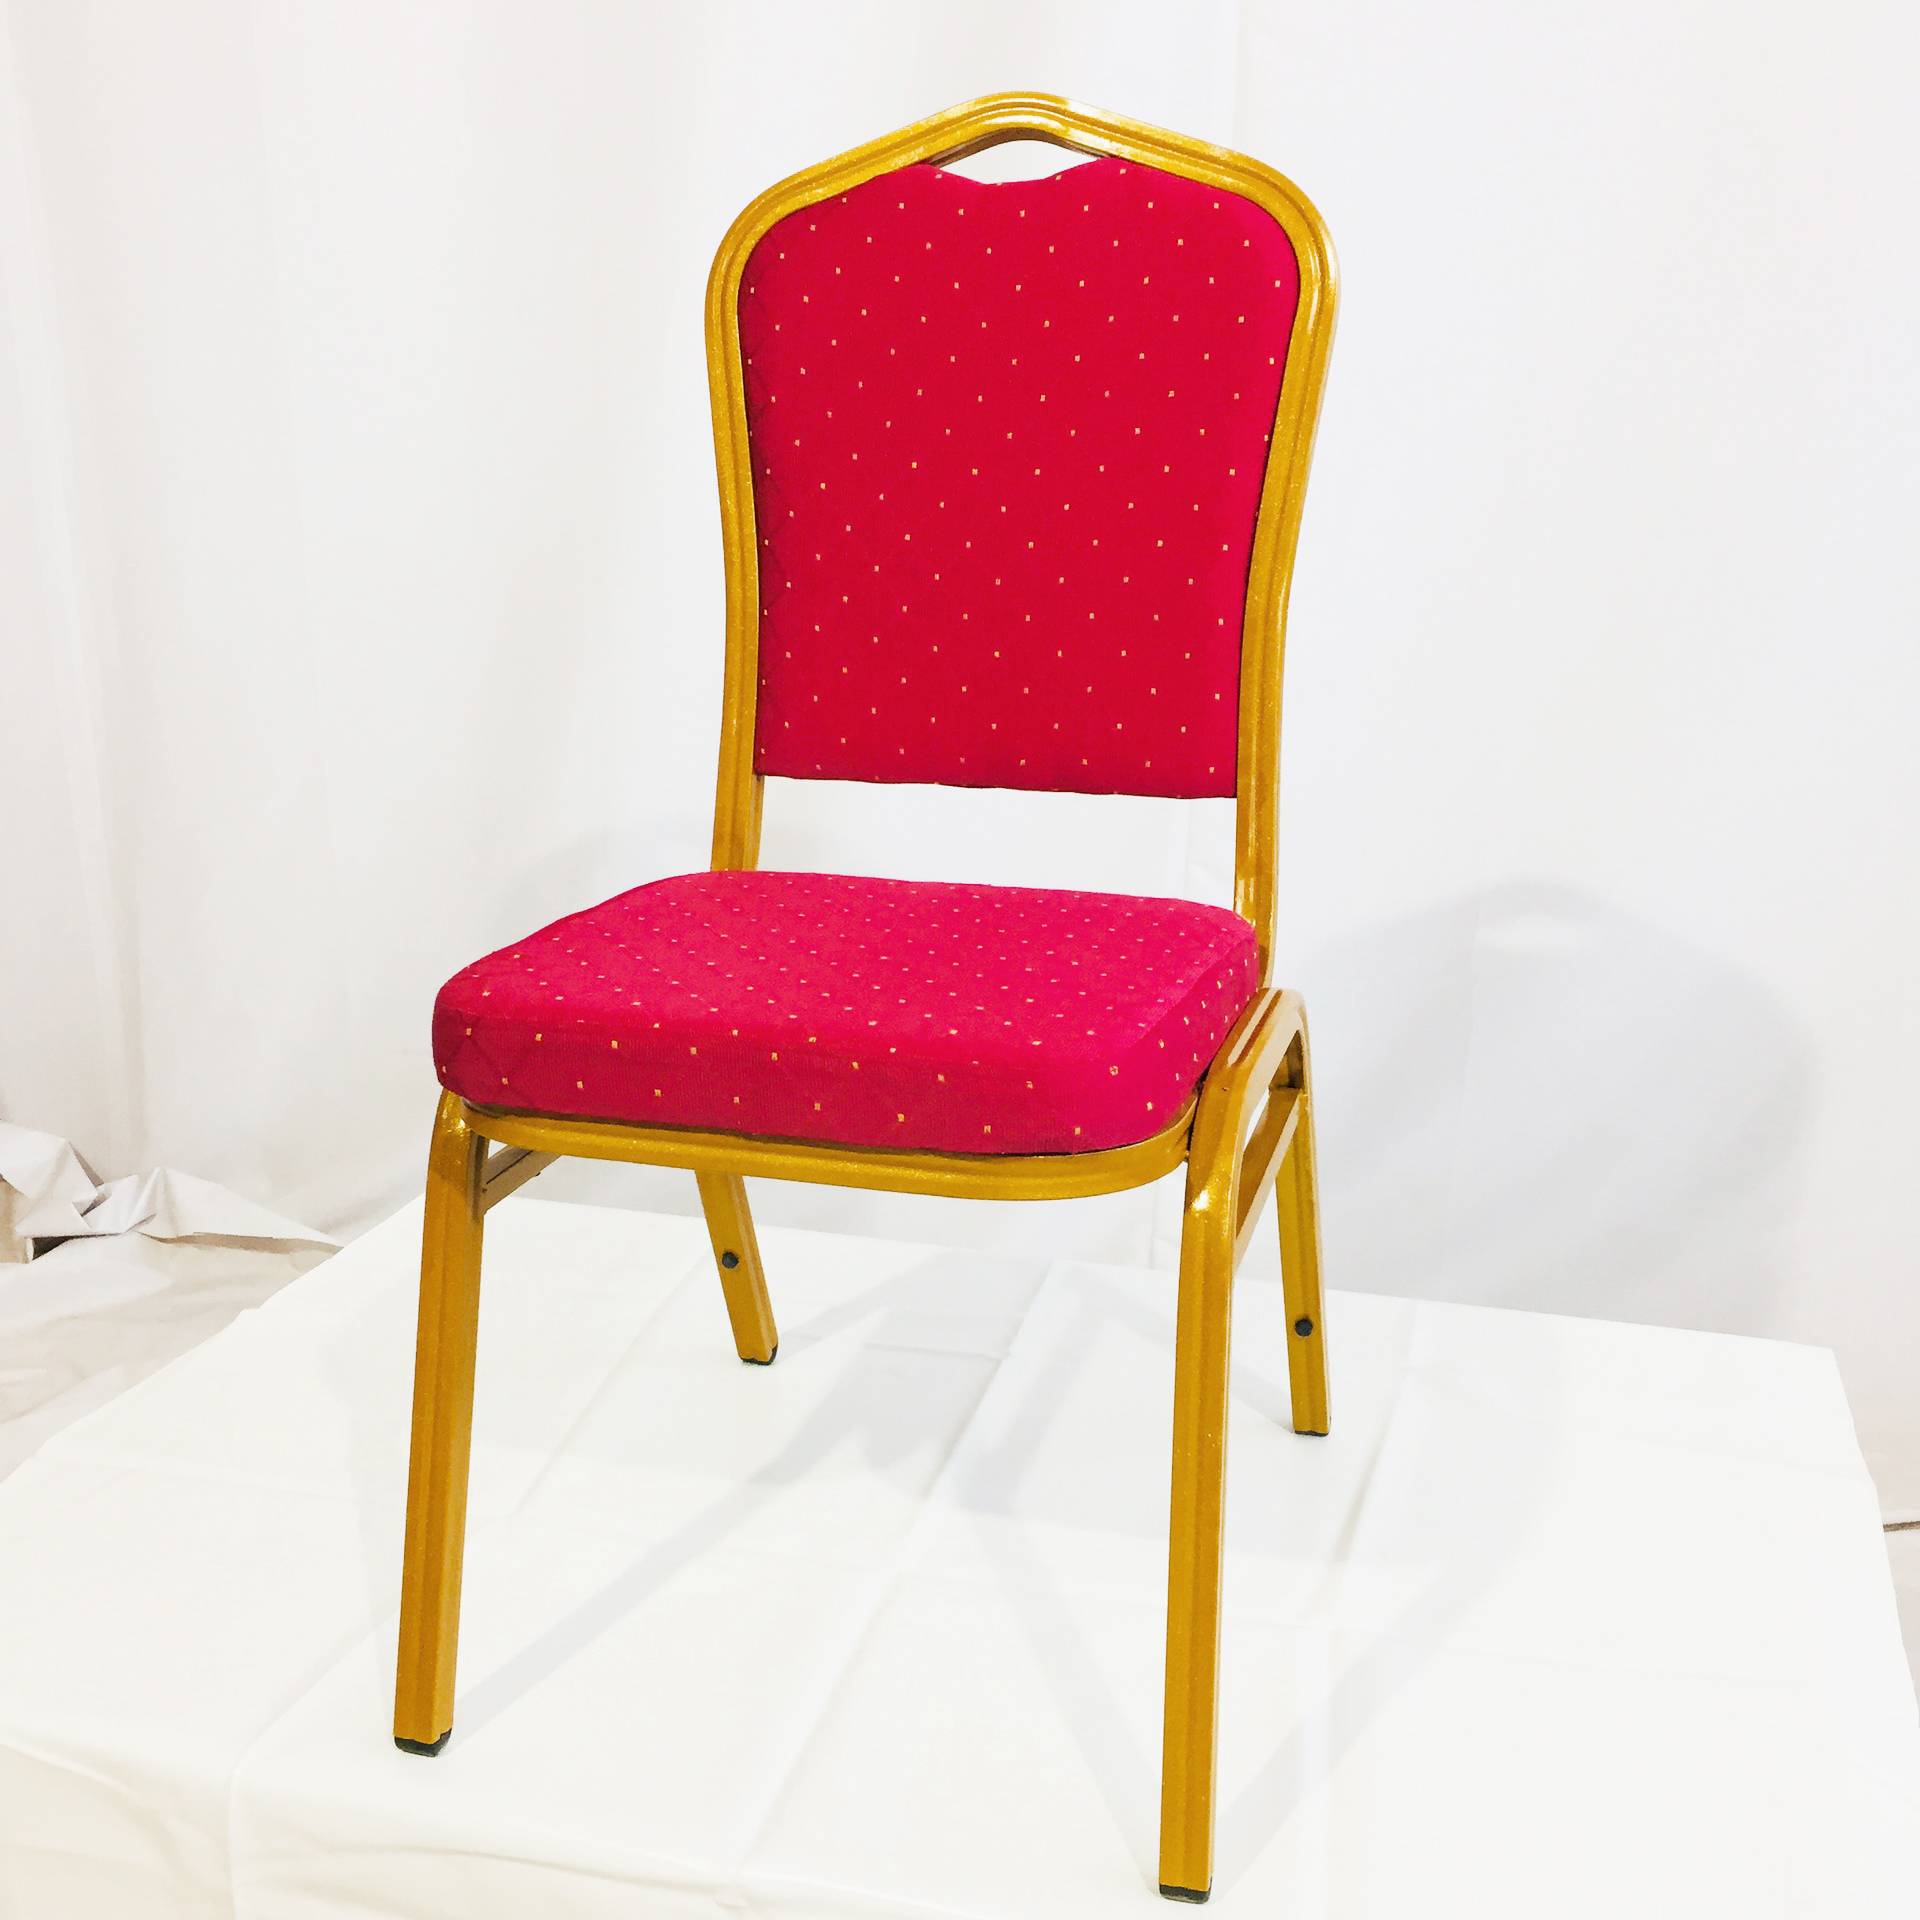 Luxury wedding restaurant banquet hotel room chair furniture design supplies